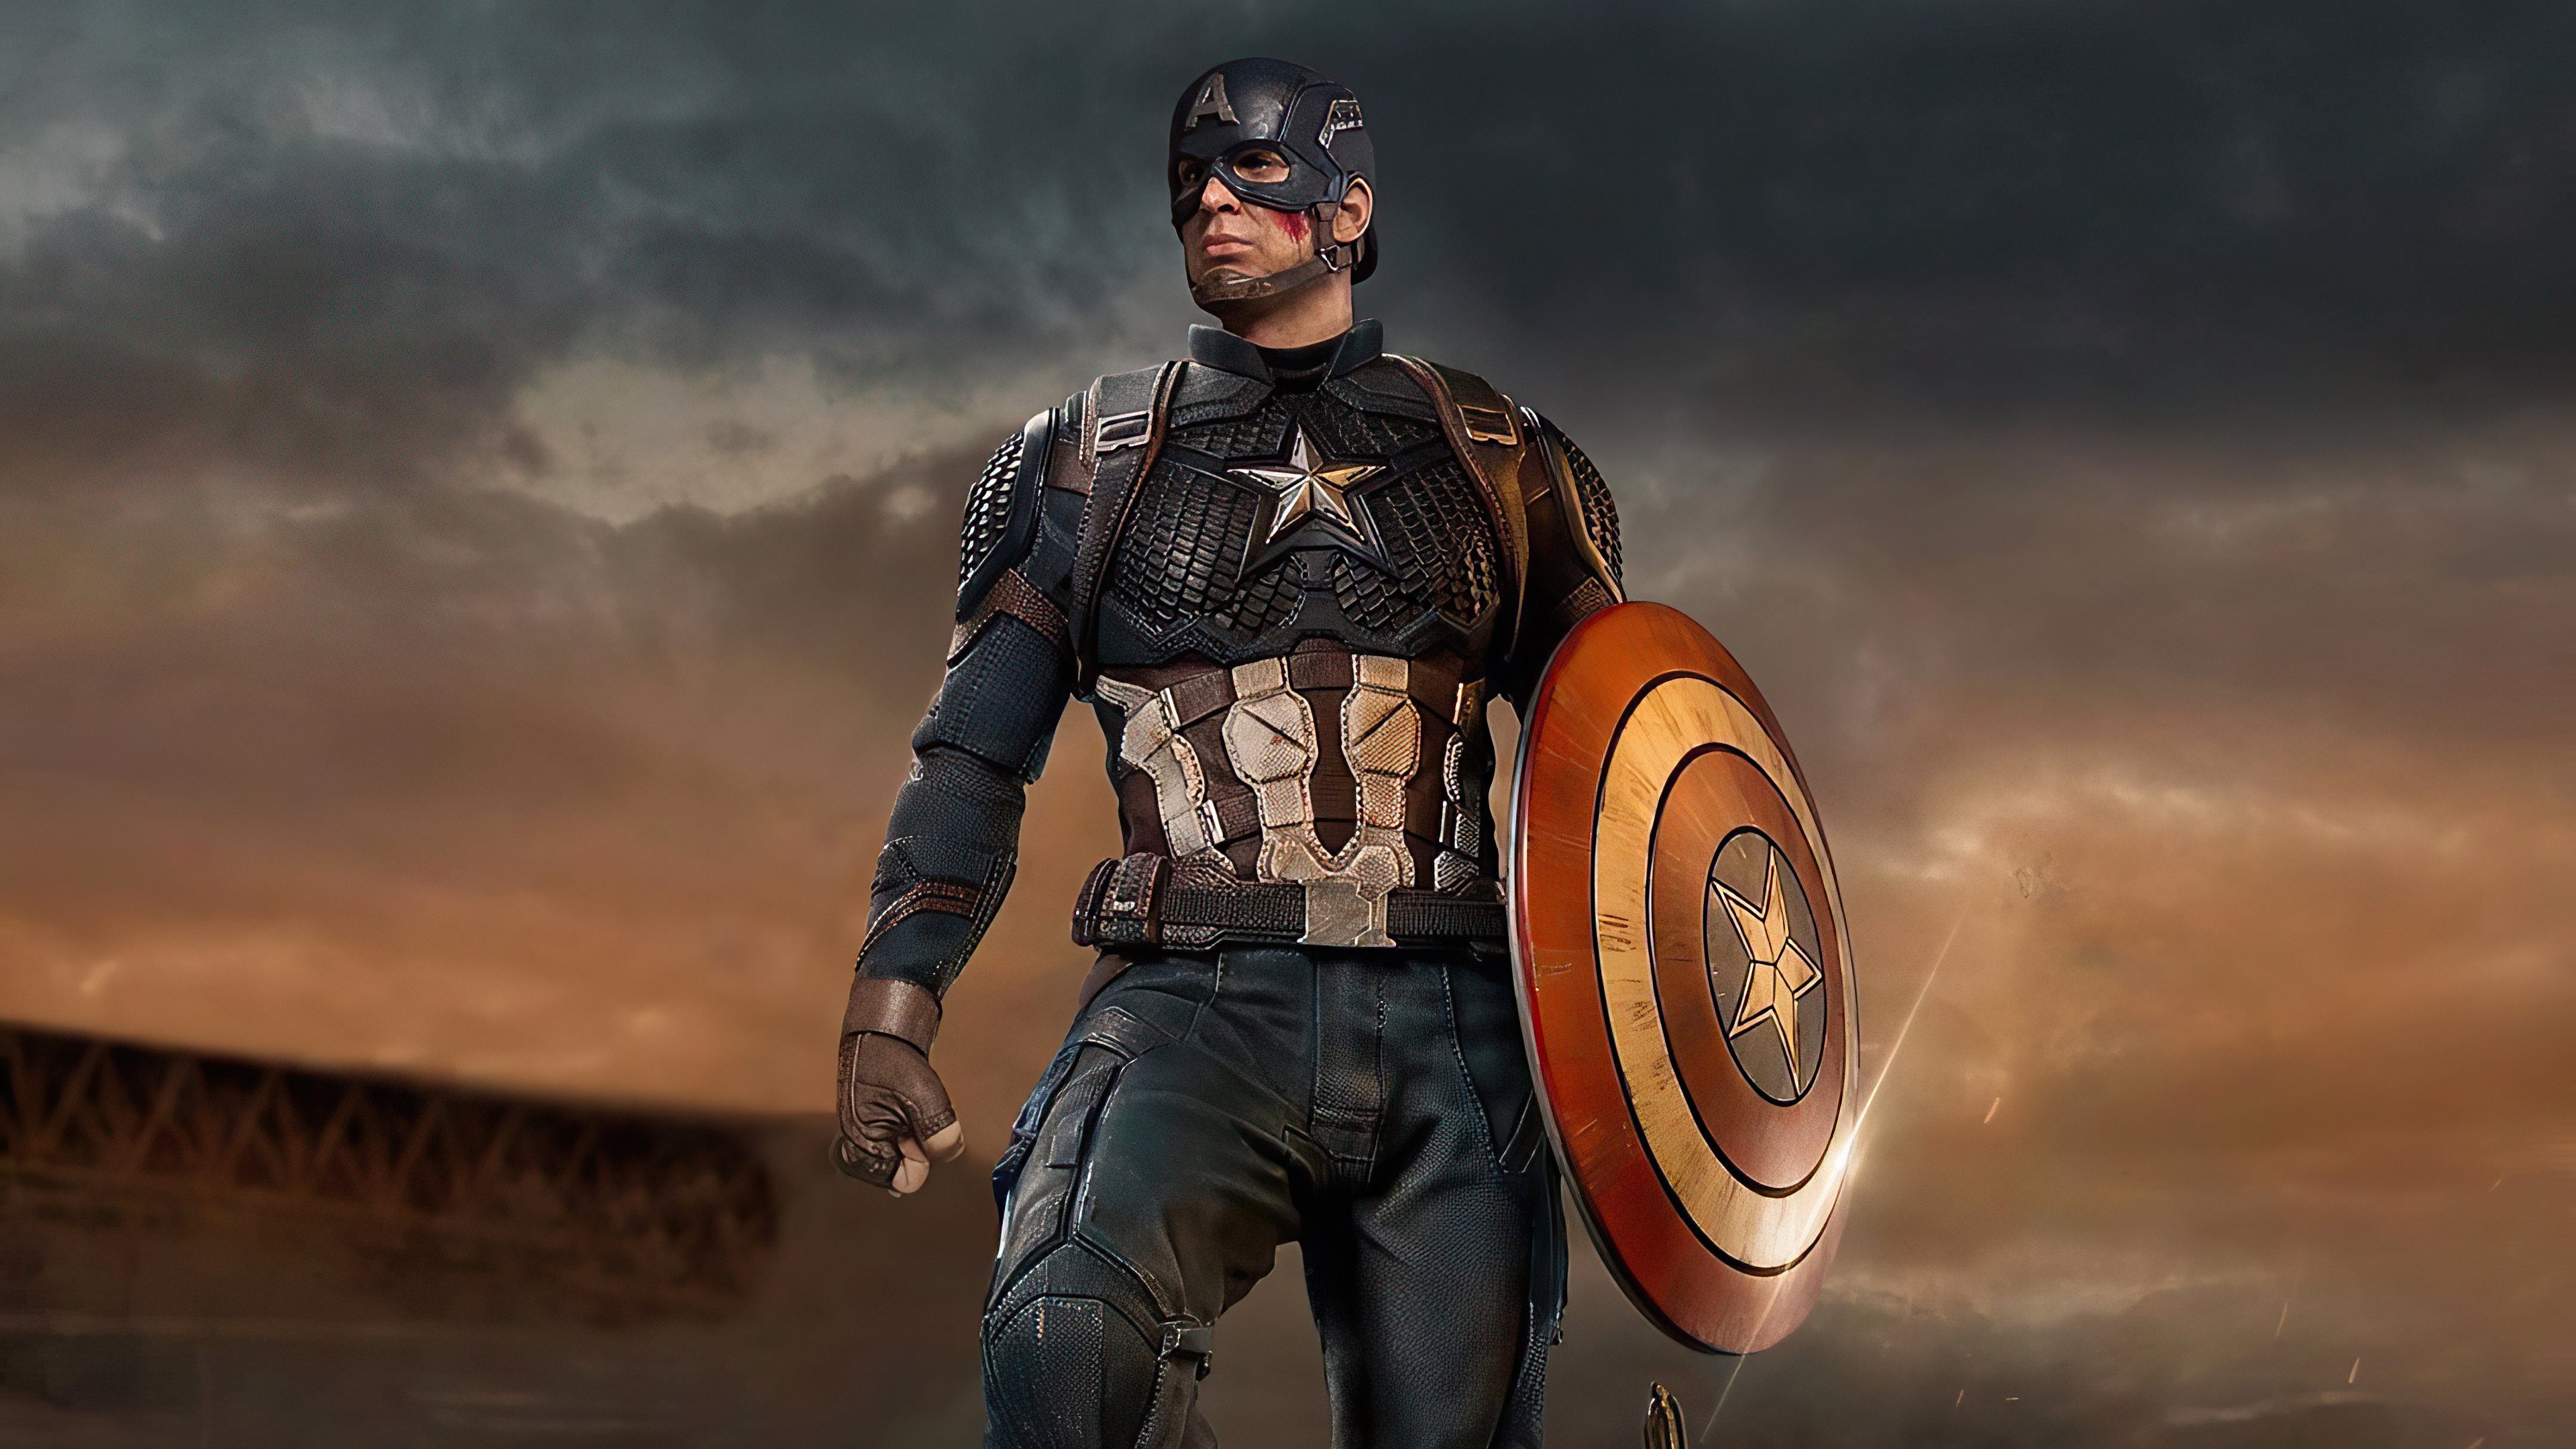 Fondos De Pantalla Capitan America Captain America Shield Escudo Capitan America Fondos De